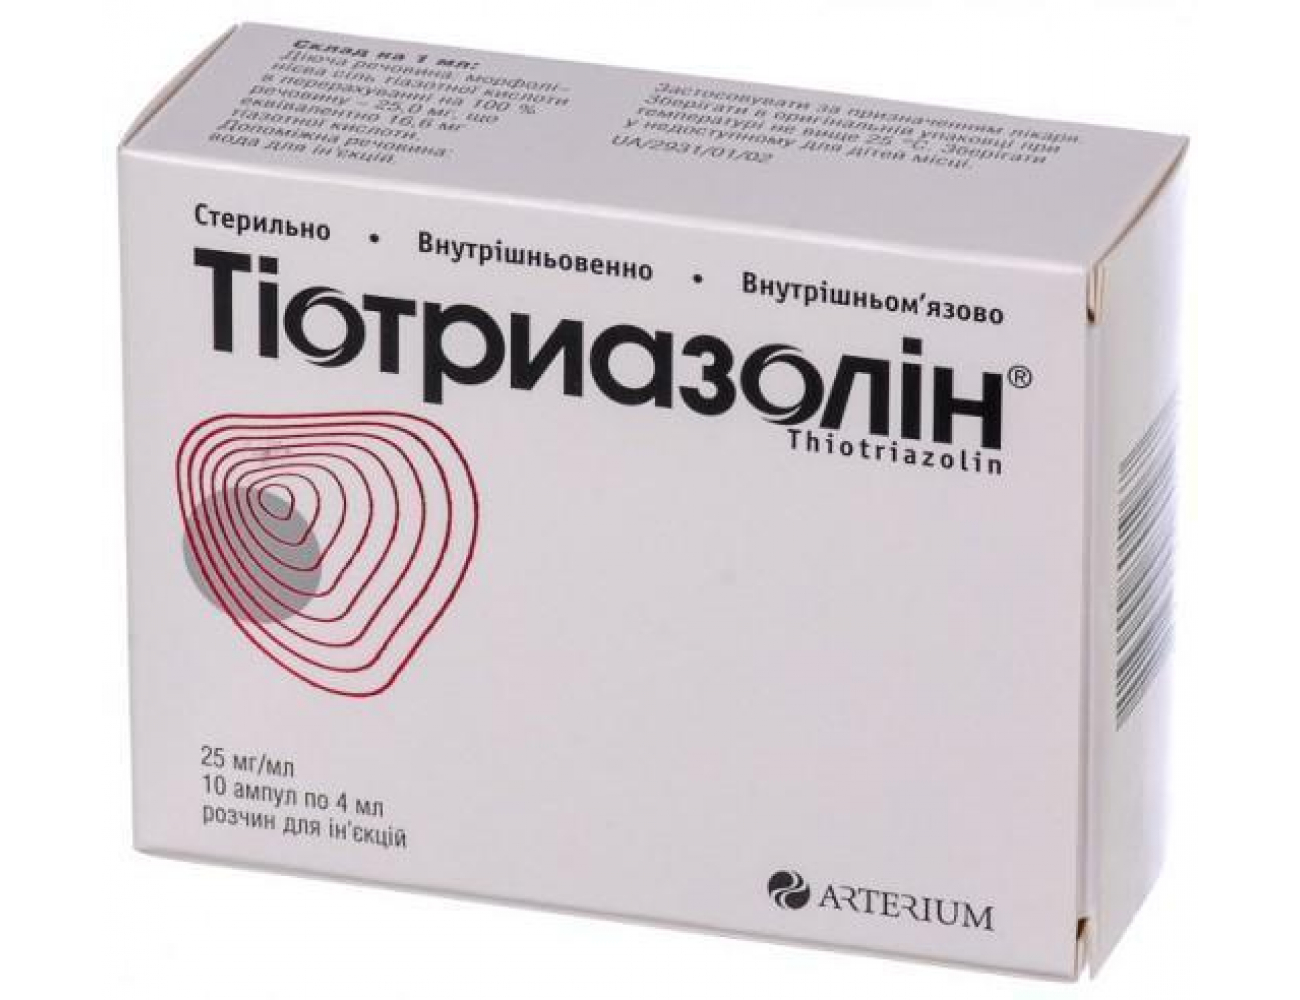 Раствор для инъекций Arterium Тиотриазолин 10 ампул по 2 мл. | отзывы